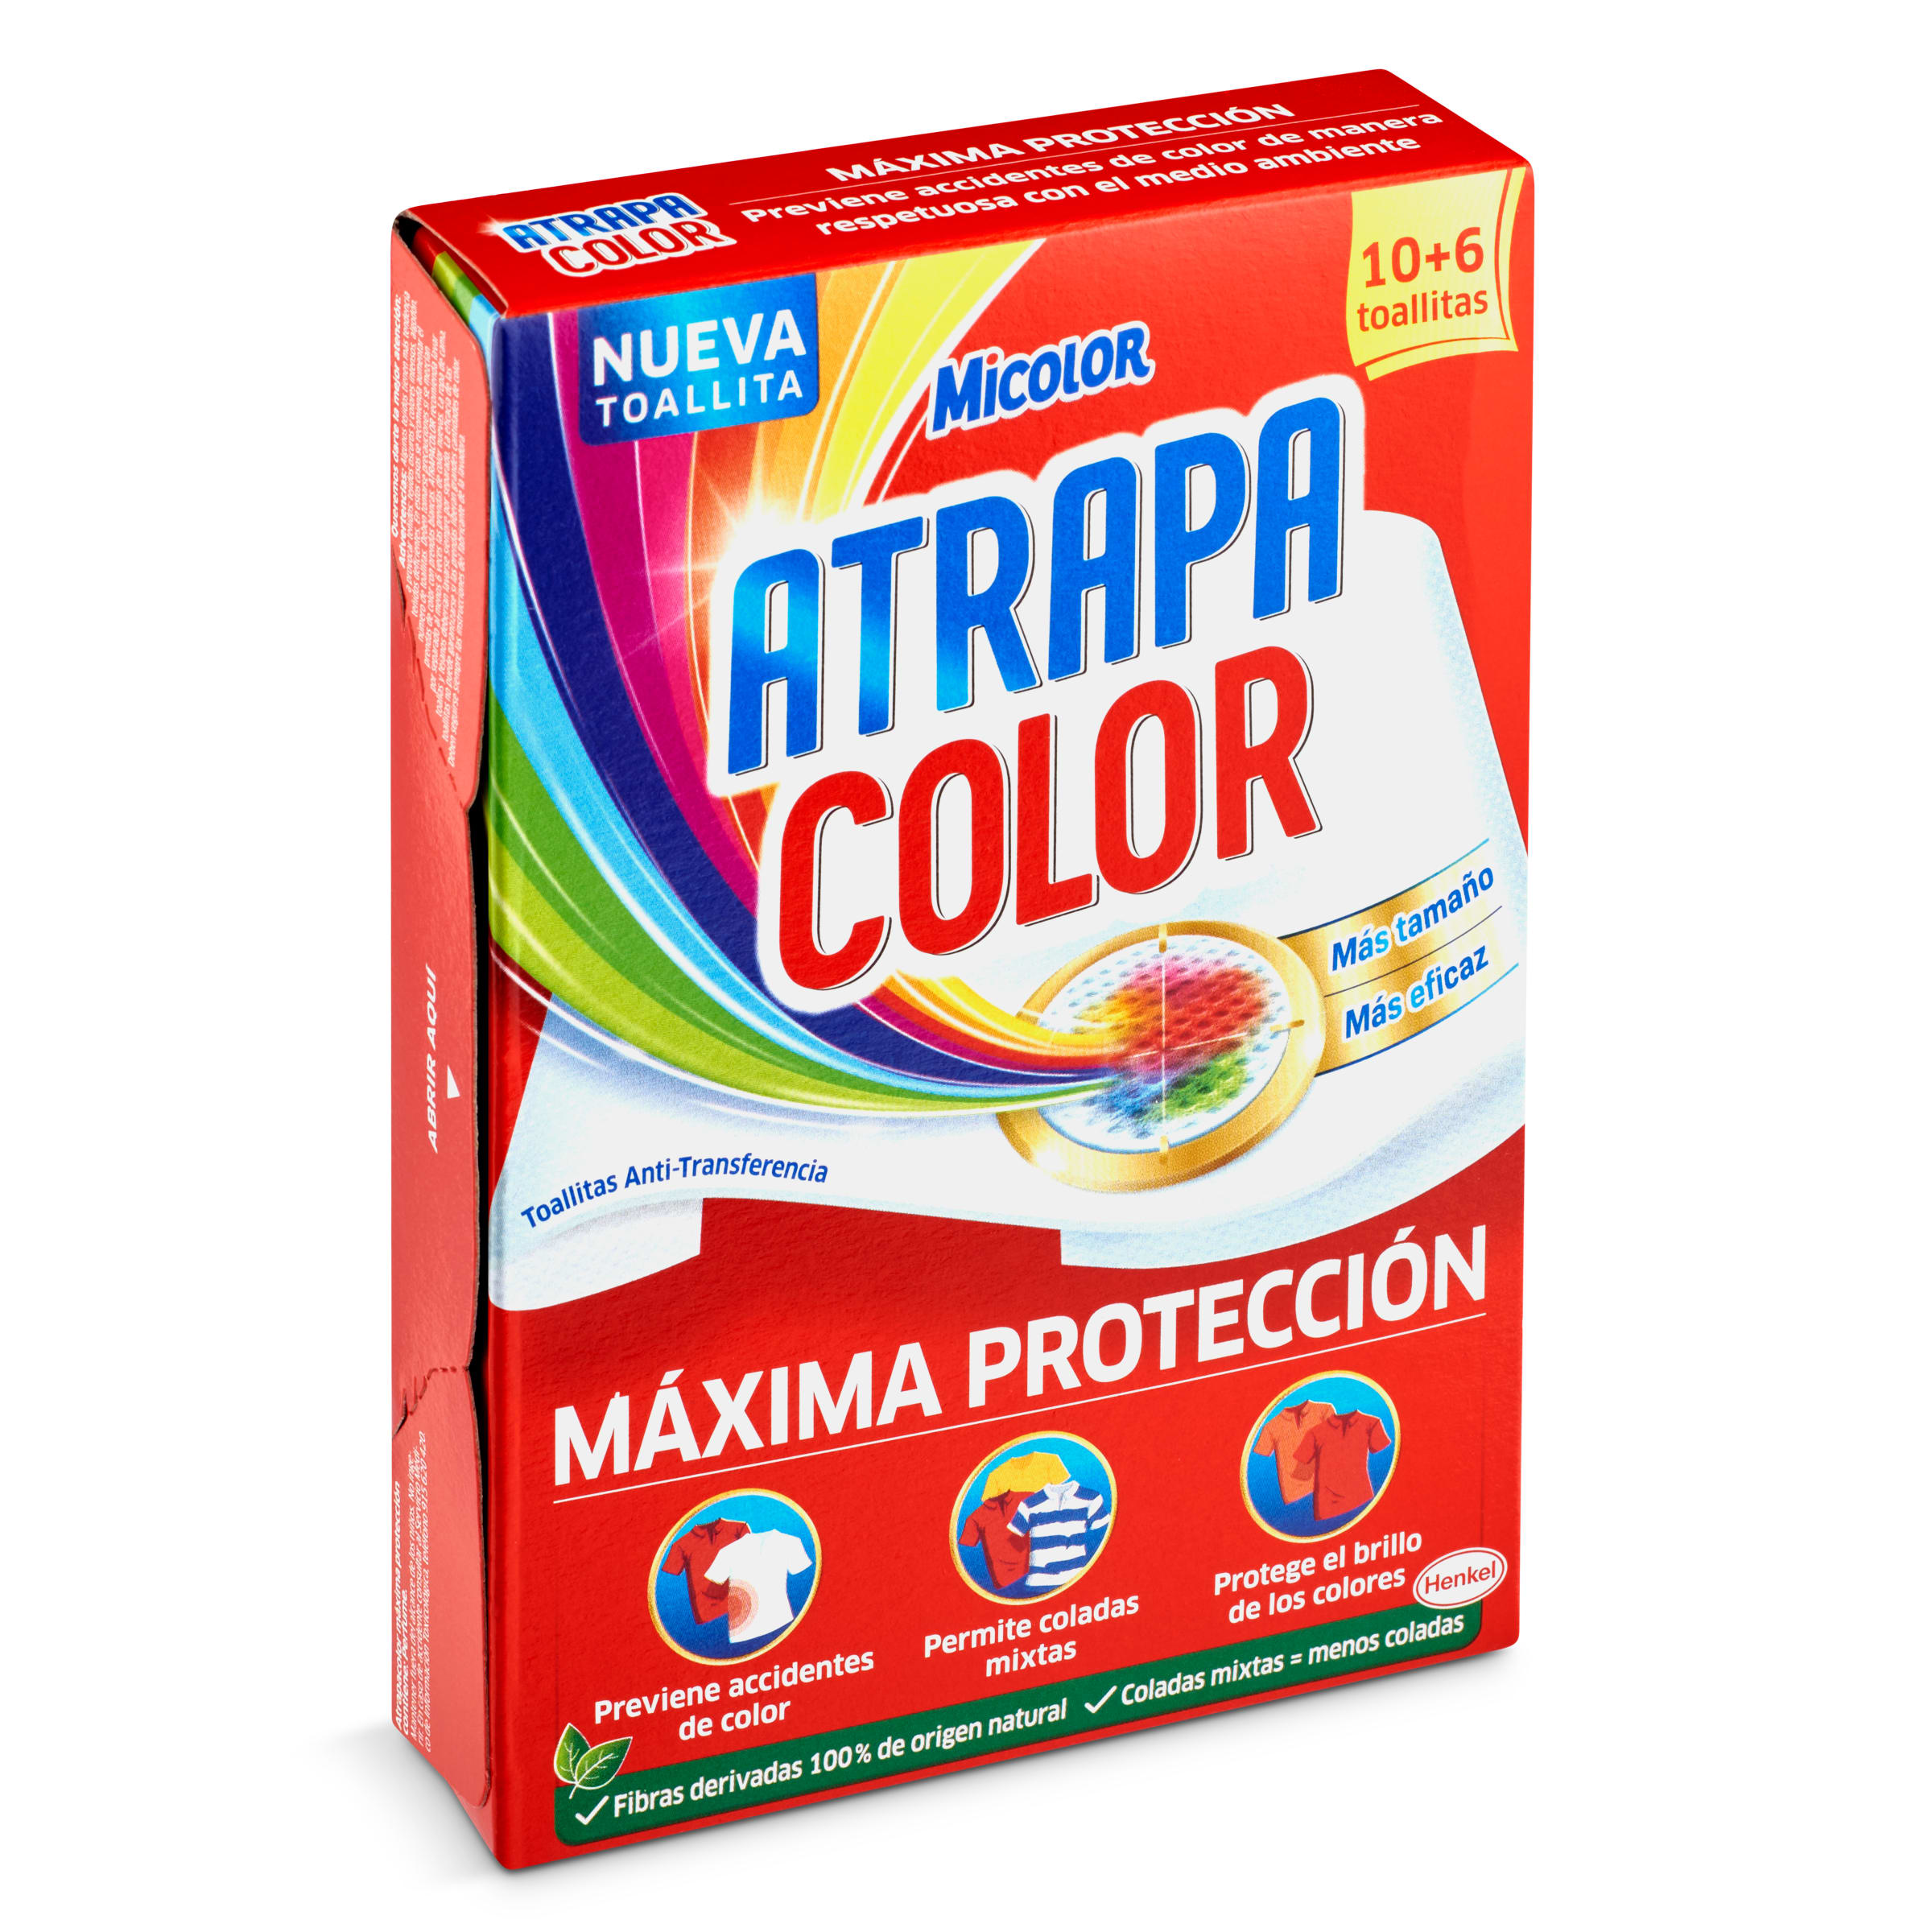 Toallitas atrapa color Micolor caja 16 unidades - Supermercados DIA